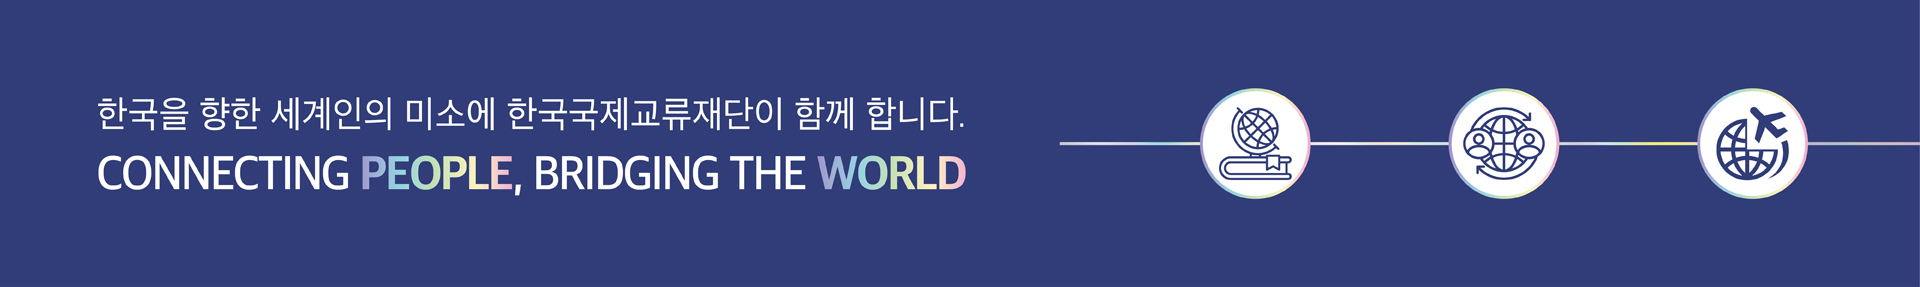 한국을 향한 세계인의 미소에 한국국제교류재단이 함께 합니다, CONNECTING PEOPLE, BRIDGING THE WORLD